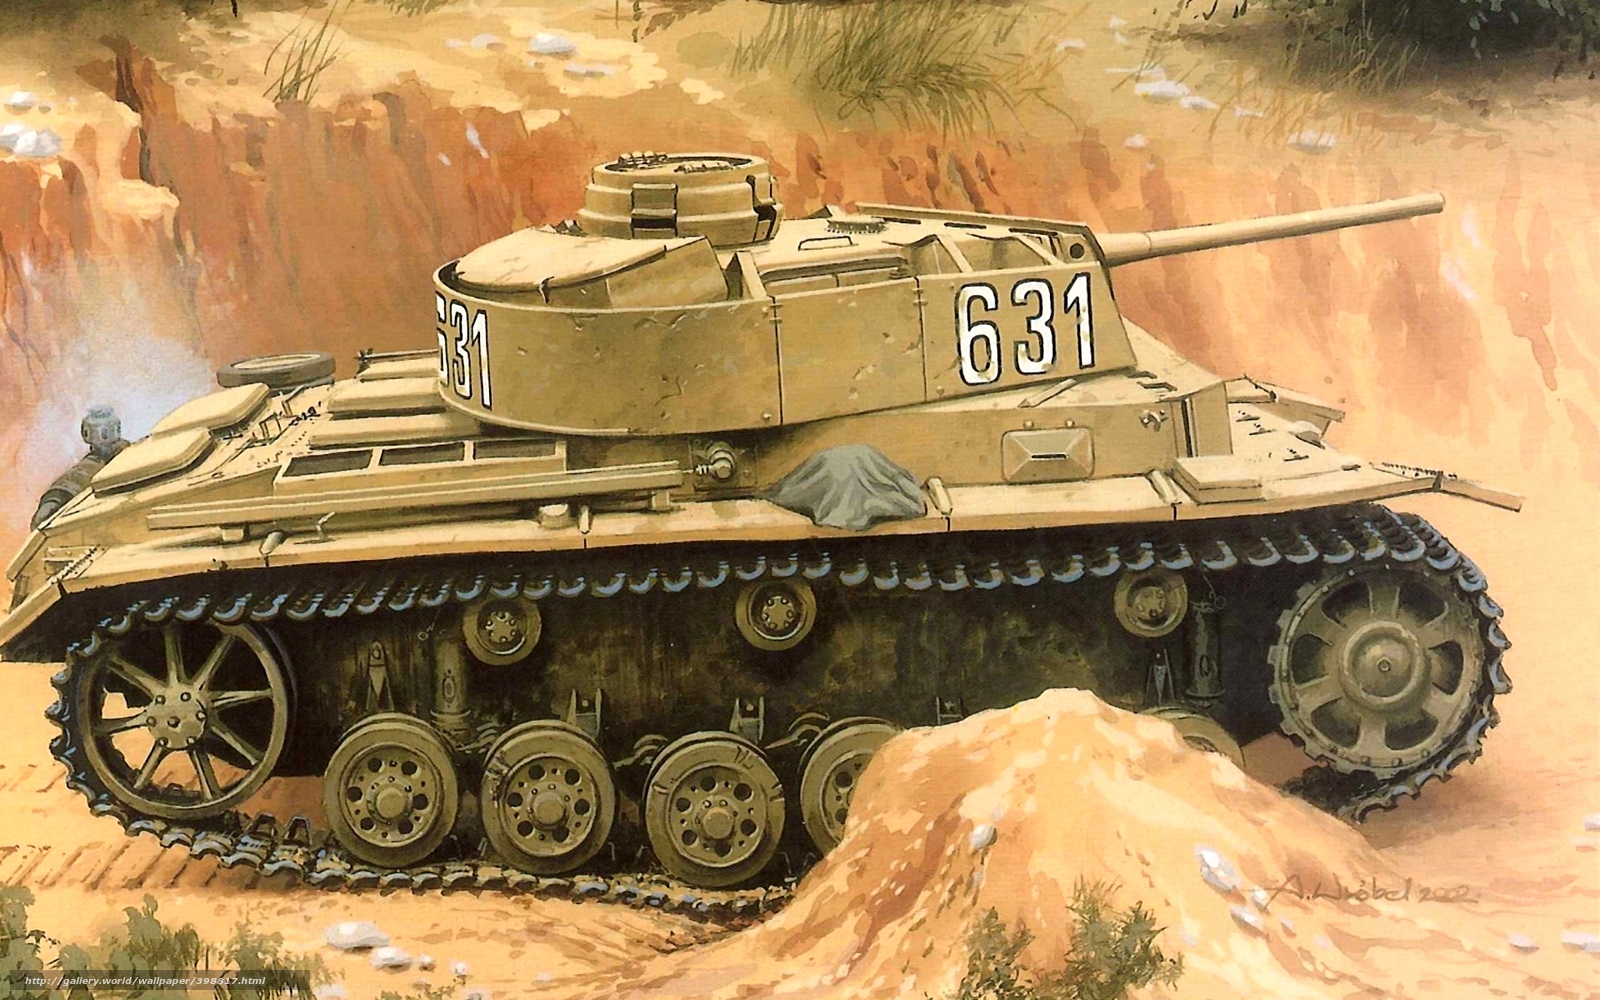 Wallpaper Panzer Iii Ww2 Military Art Desktop